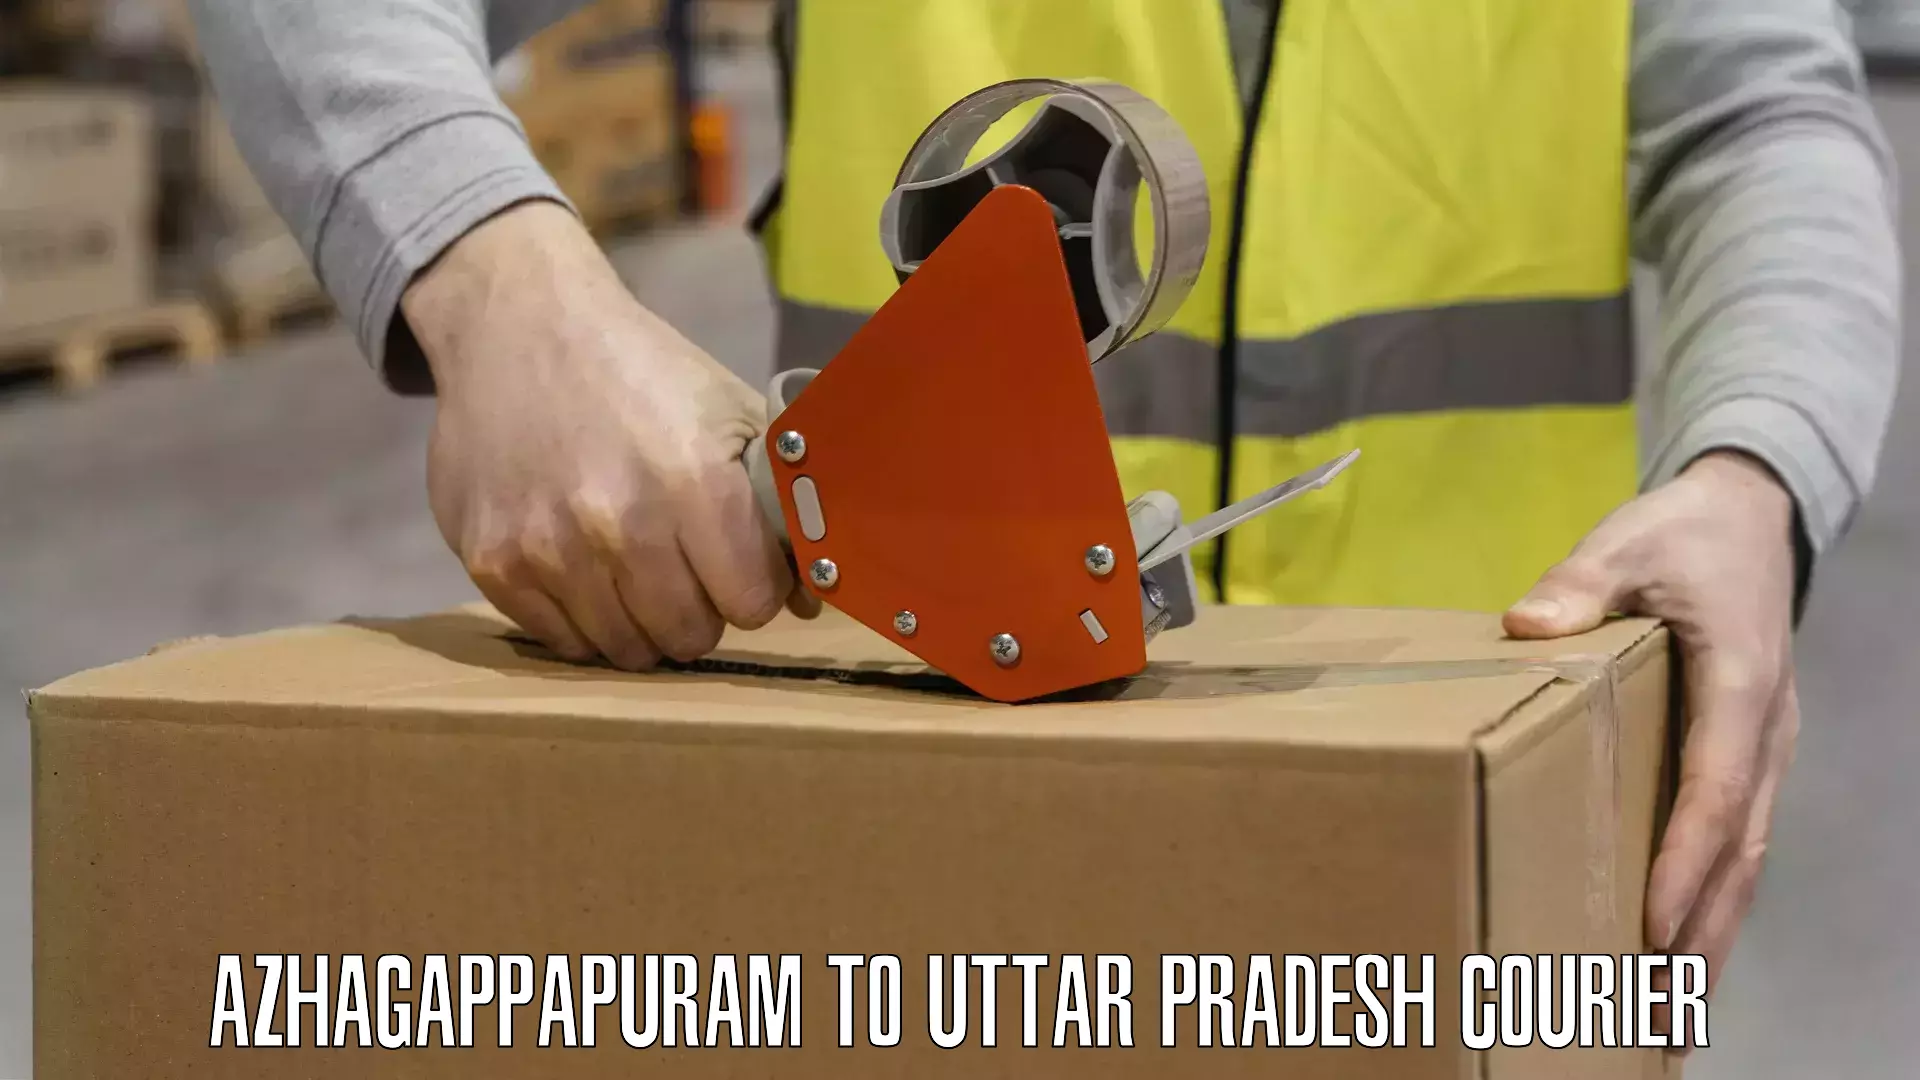 Customizable delivery plans Azhagappapuram to Uttar Pradesh